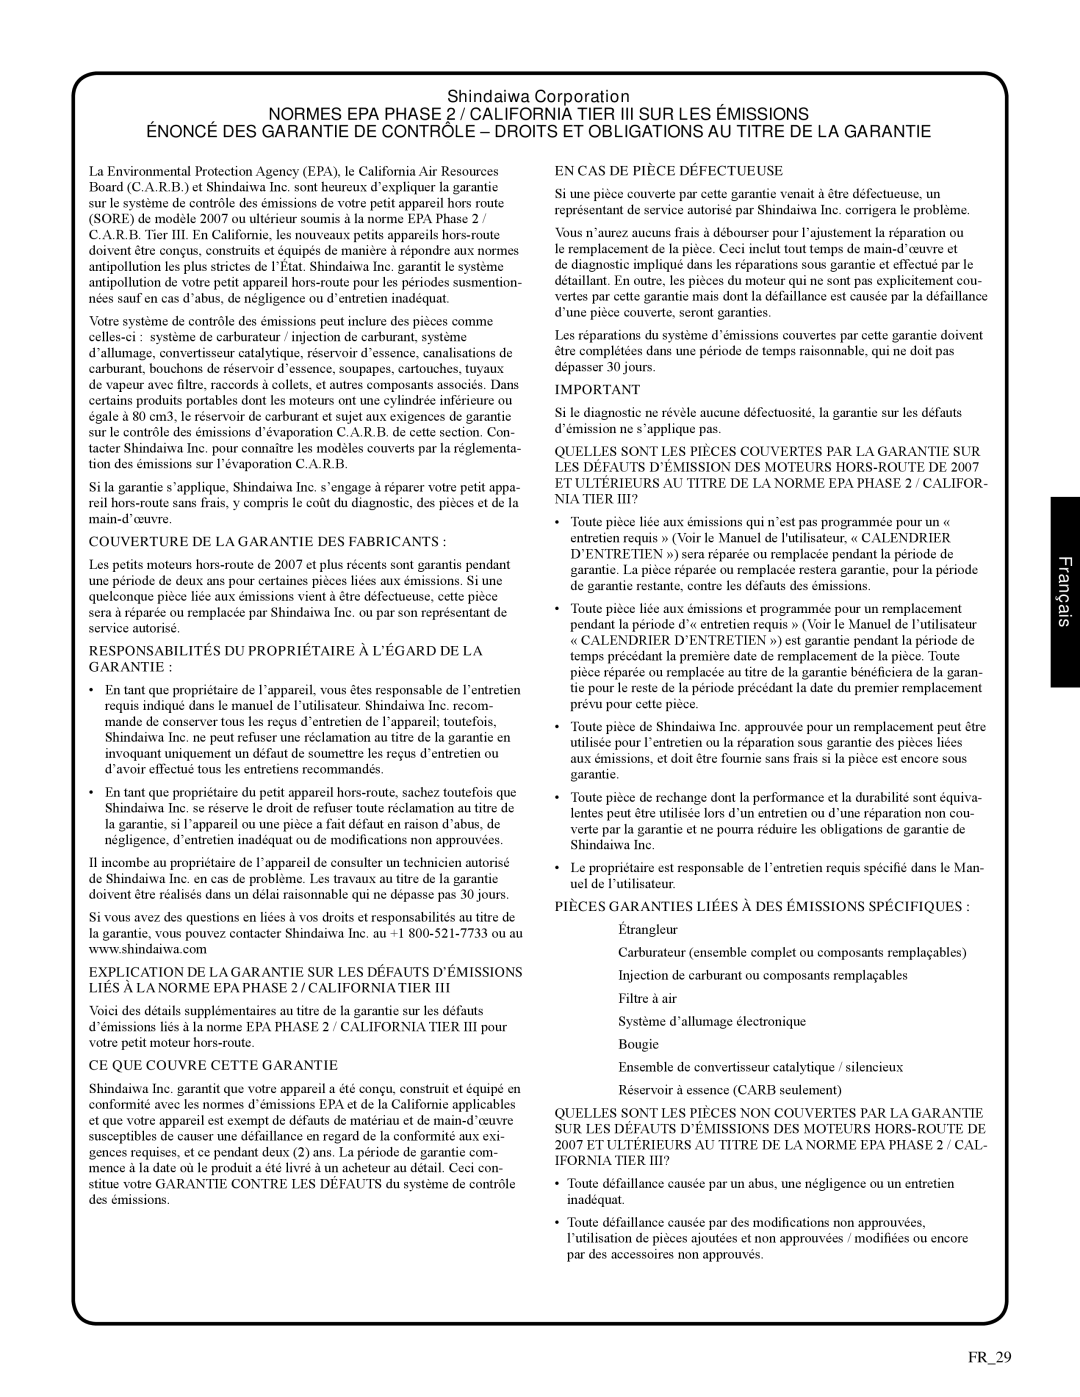 Shindaiwa 326T, 82085 manual Déclaration de garantie, Shindaiwa Corporation, Français 